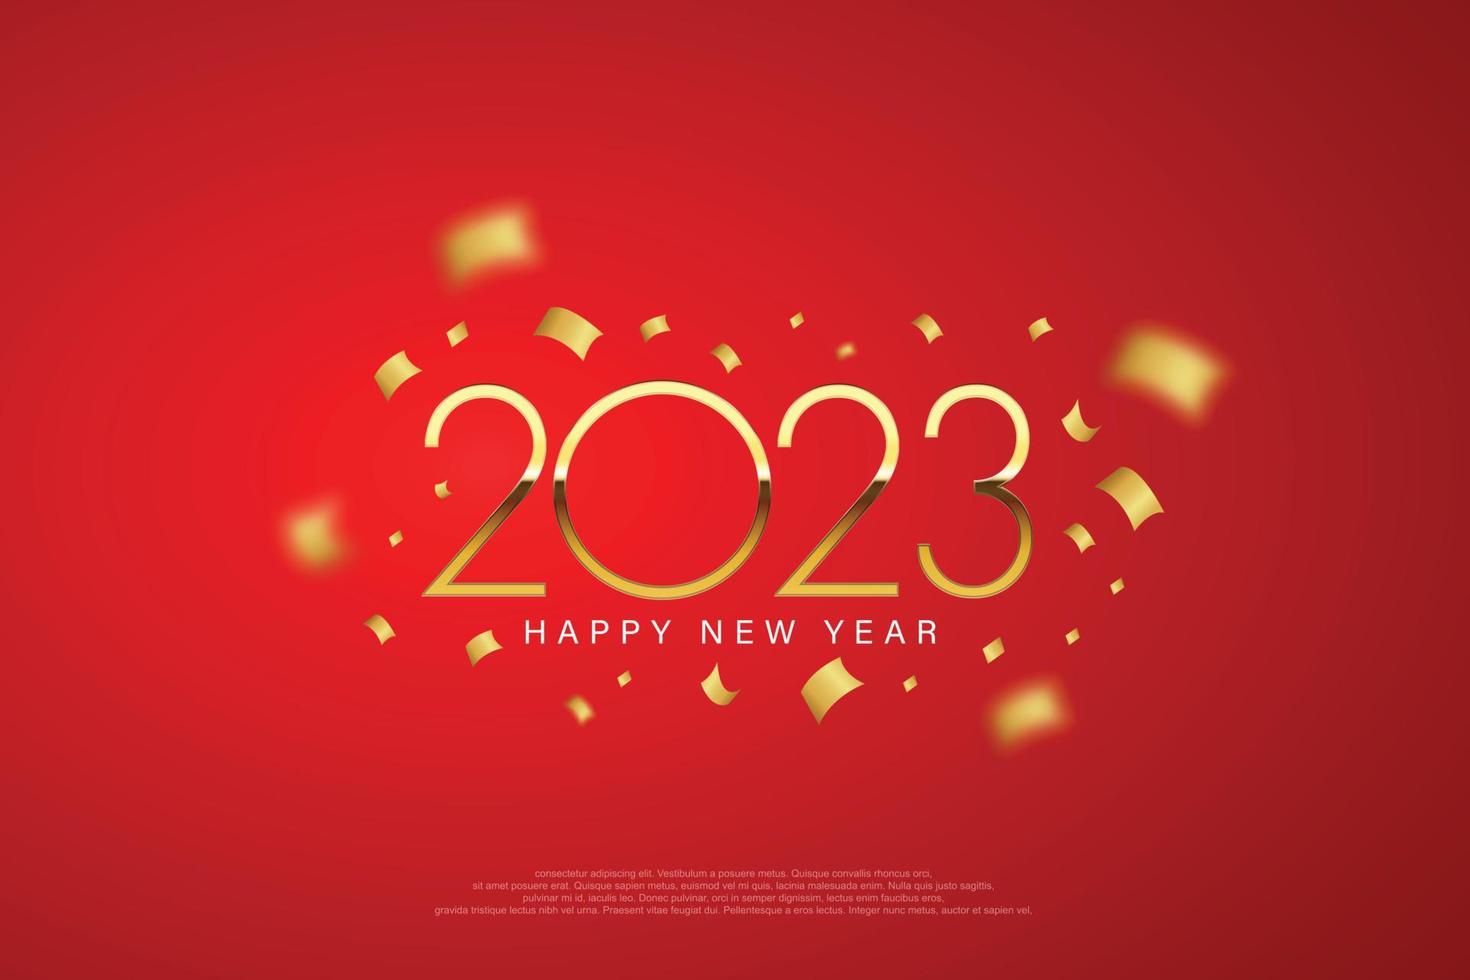 2023 felice anno nuovo design elegante - illustrazione vettoriale dei numeri del logo dorato 2023 su sfondo rosso - tipografia perfetta per il 2023 salva la data disegni di lusso e celebrazione del nuovo anno.